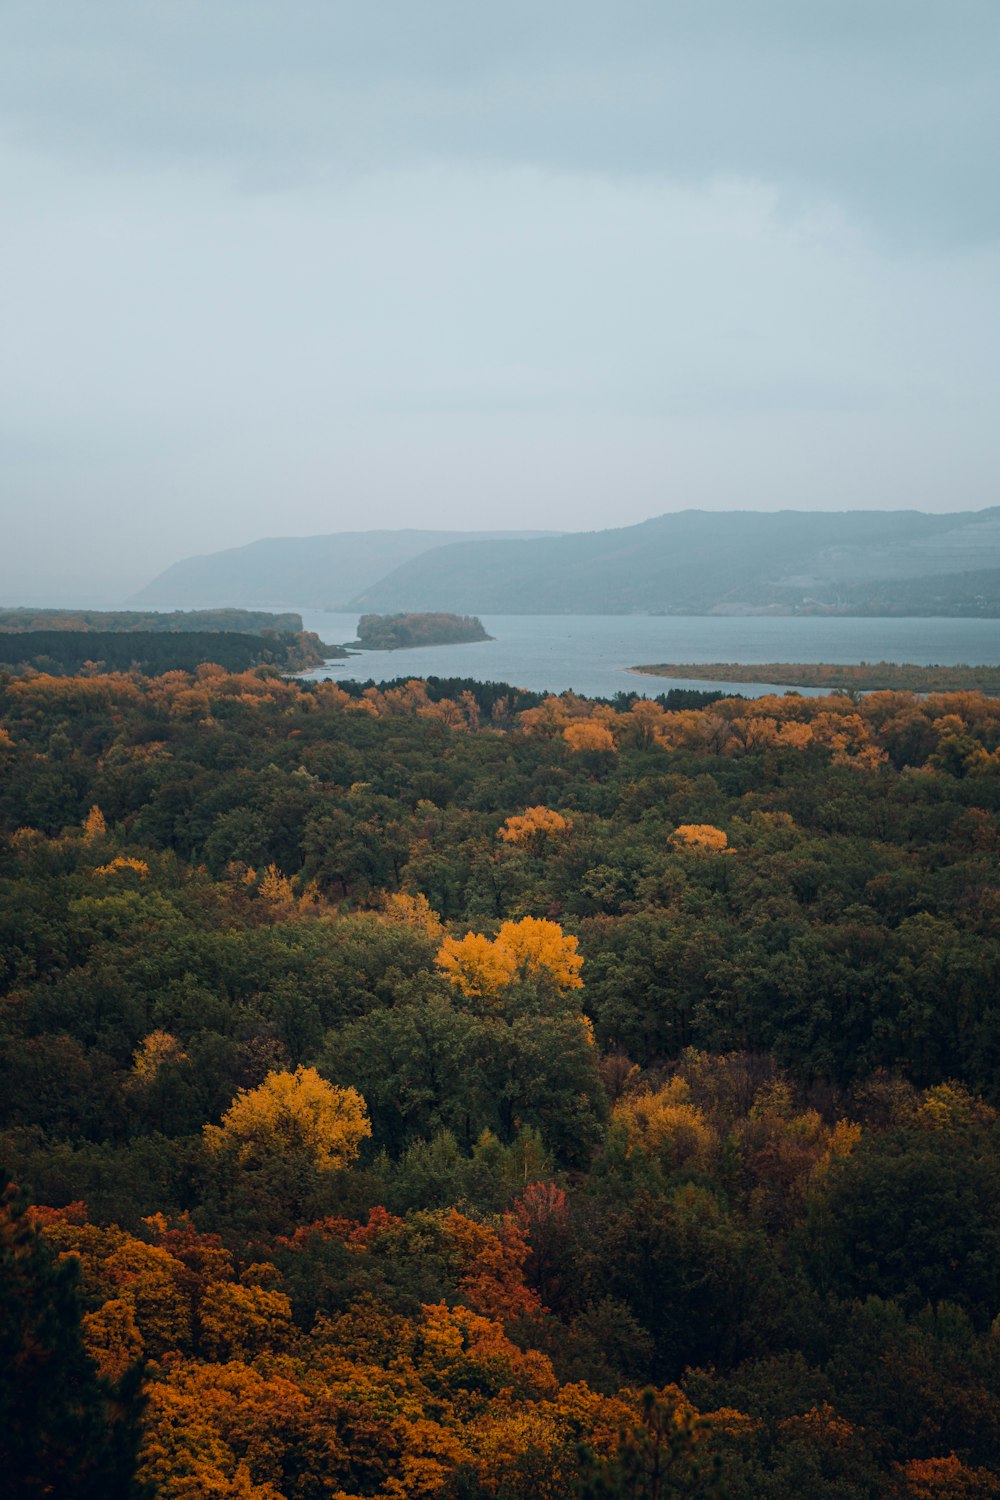 Una vista panorámica de un lago rodeado de árboles